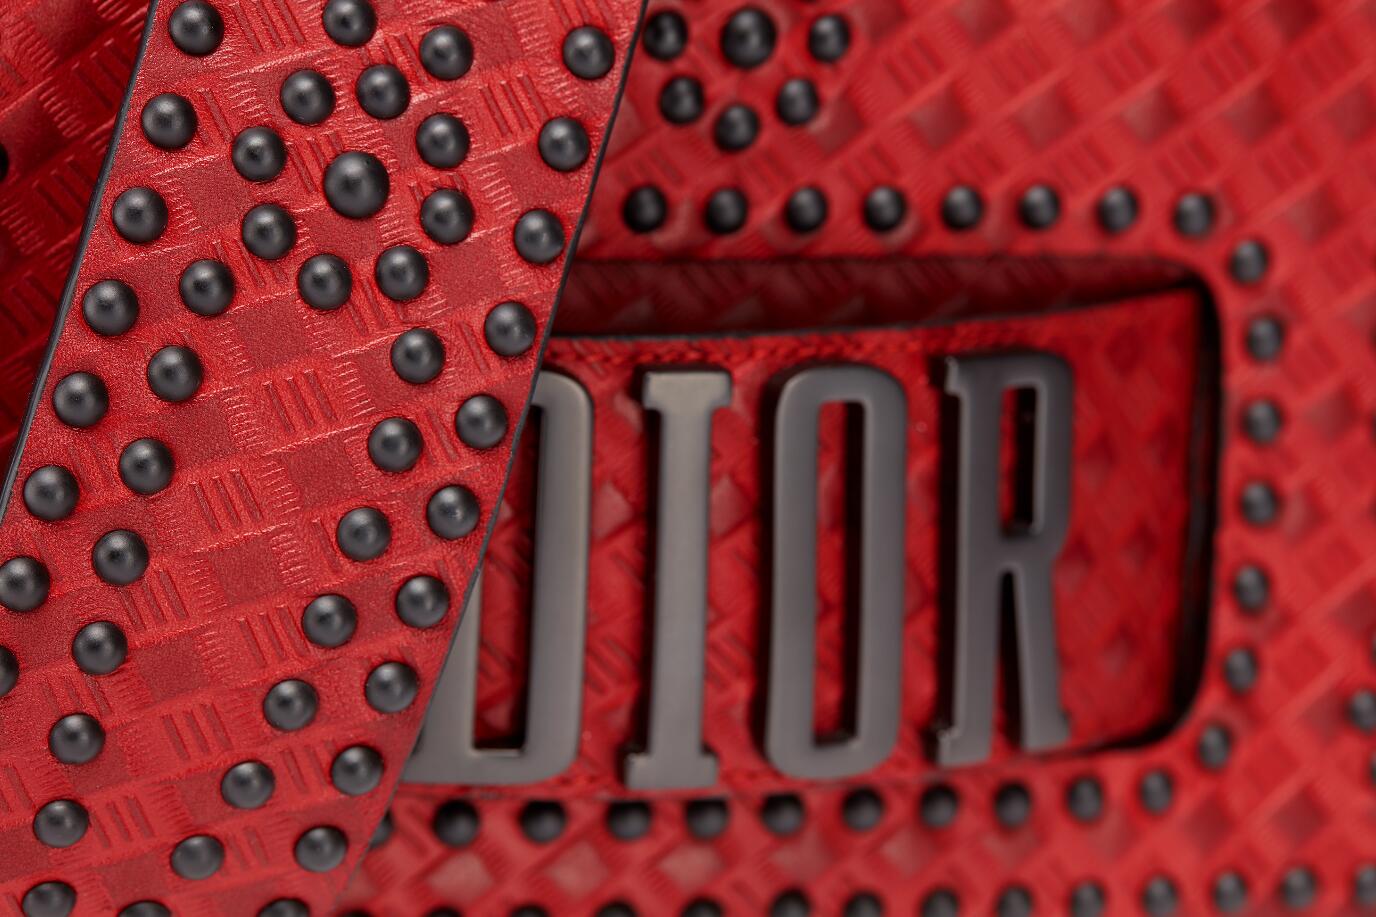 迪奥 Dio(r)evolution 红色小母牛皮翻盖式手提包 热印藤格纹和饰钉图案